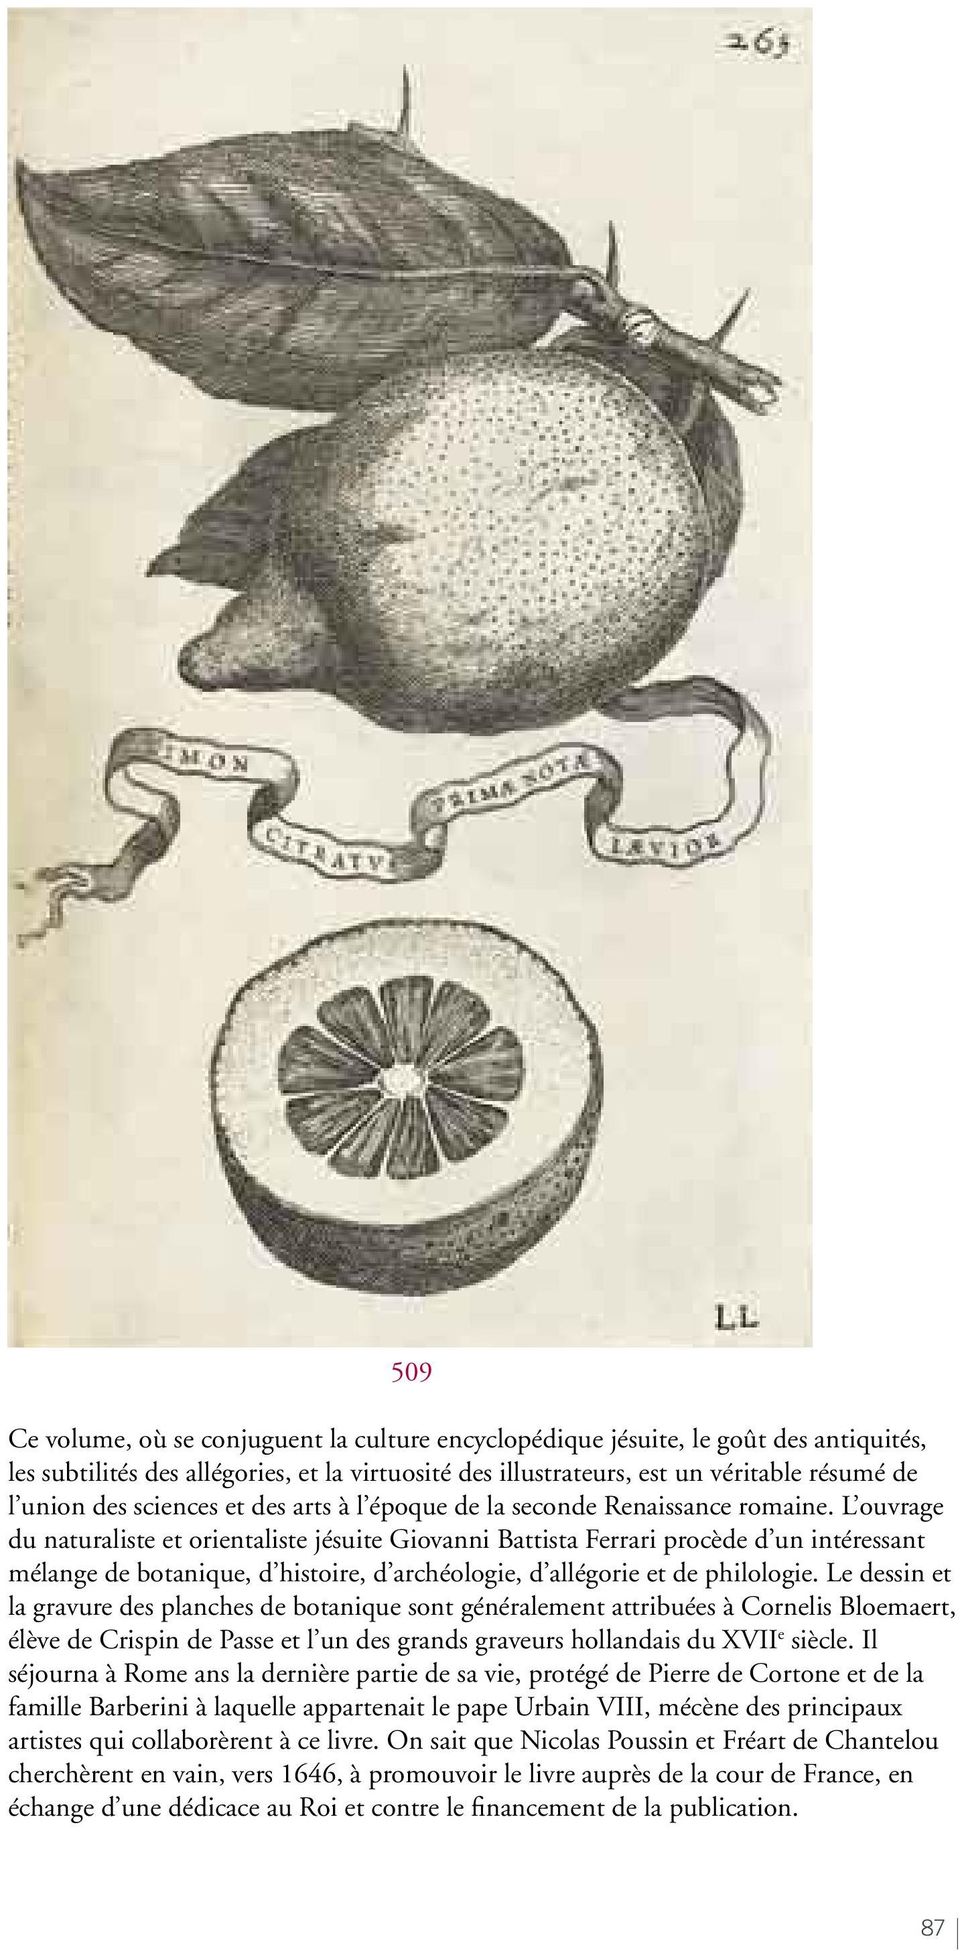 L ouvrage du naturaliste et orientaliste jésuite Giovanni Battista Ferrari procède d un intéressant mélange de botanique, d histoire, d archéologie, d allégorie et de philologie.